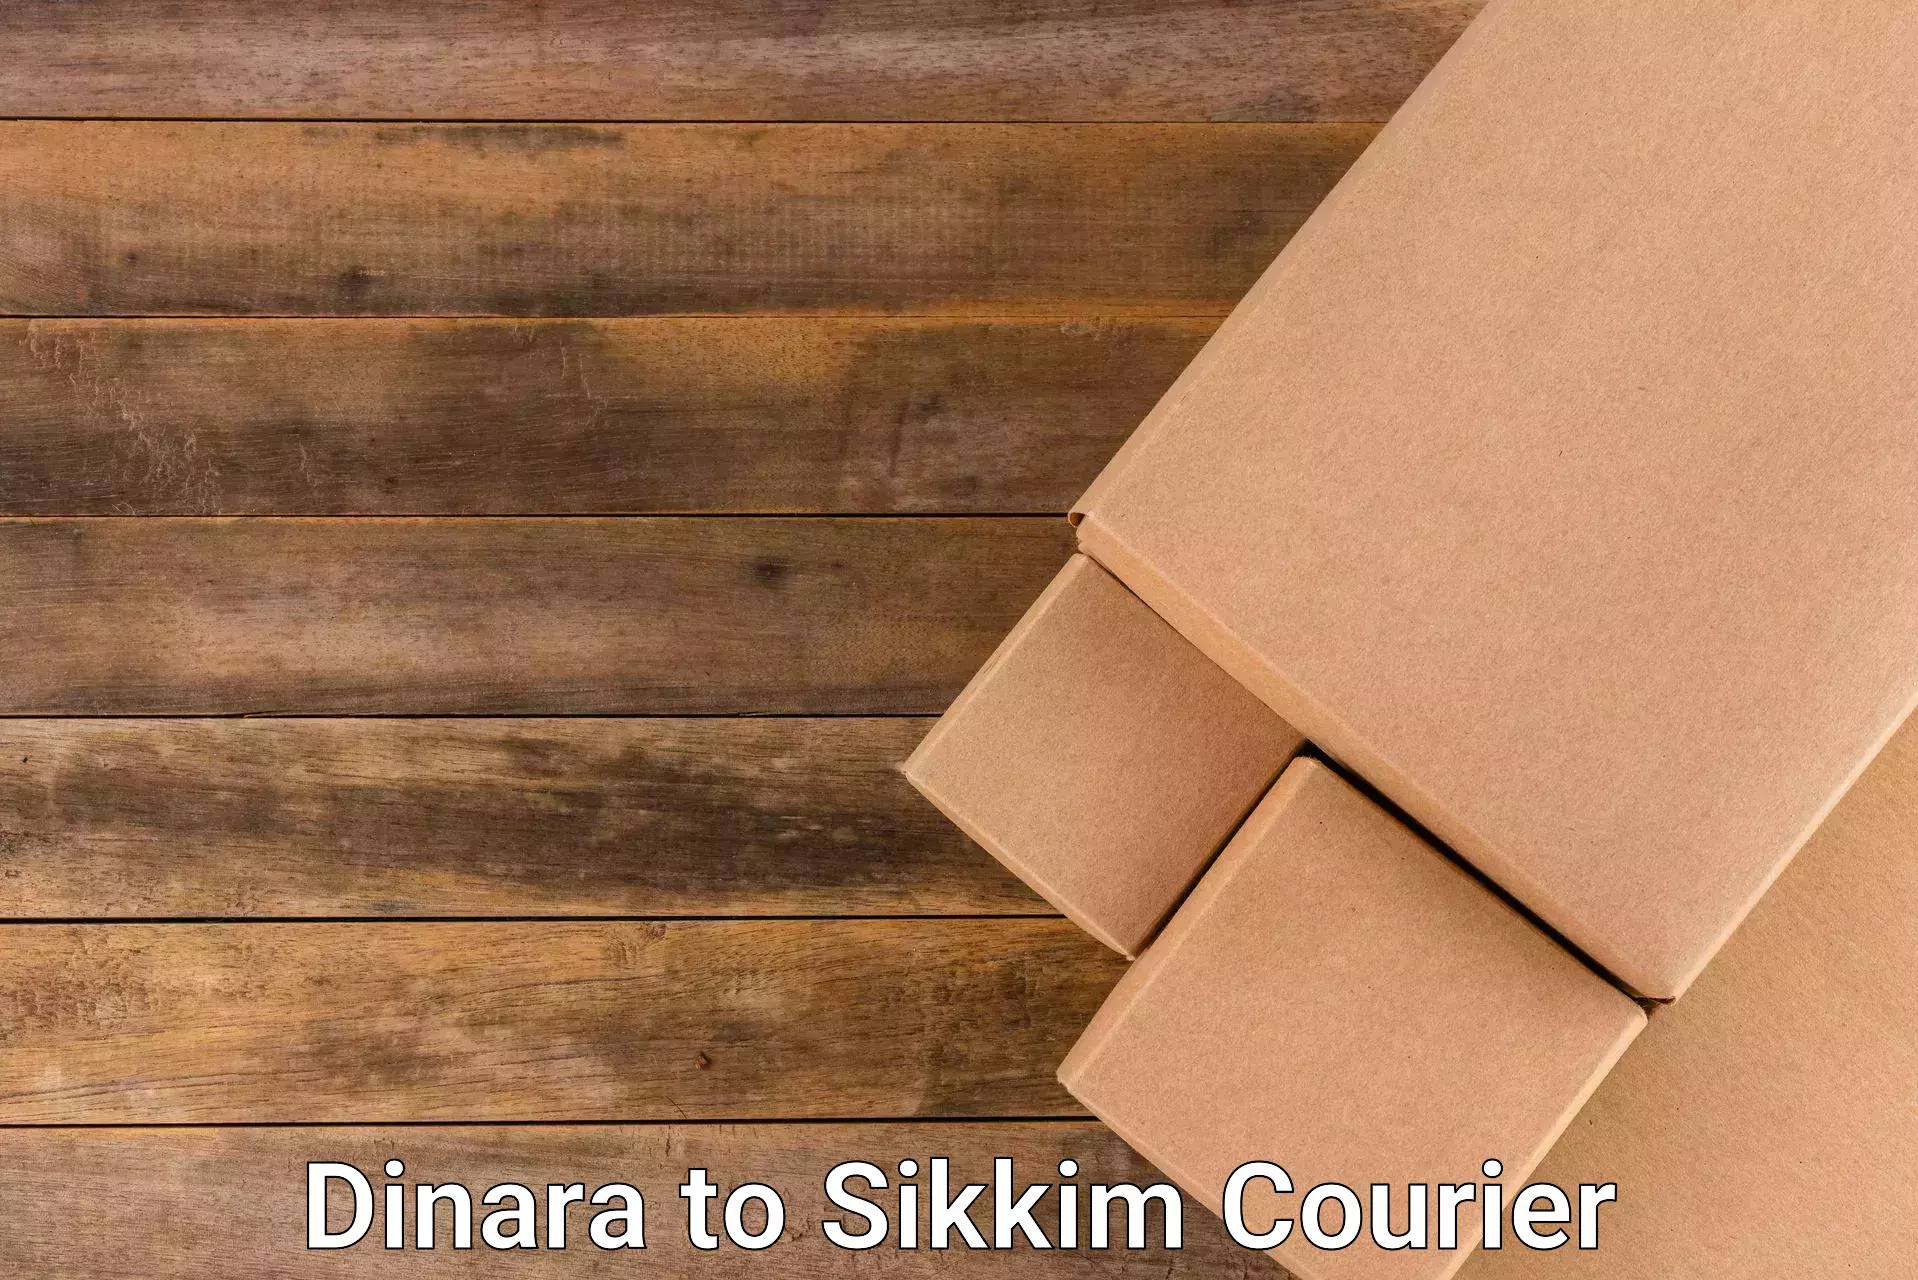 Express courier facilities Dinara to East Sikkim